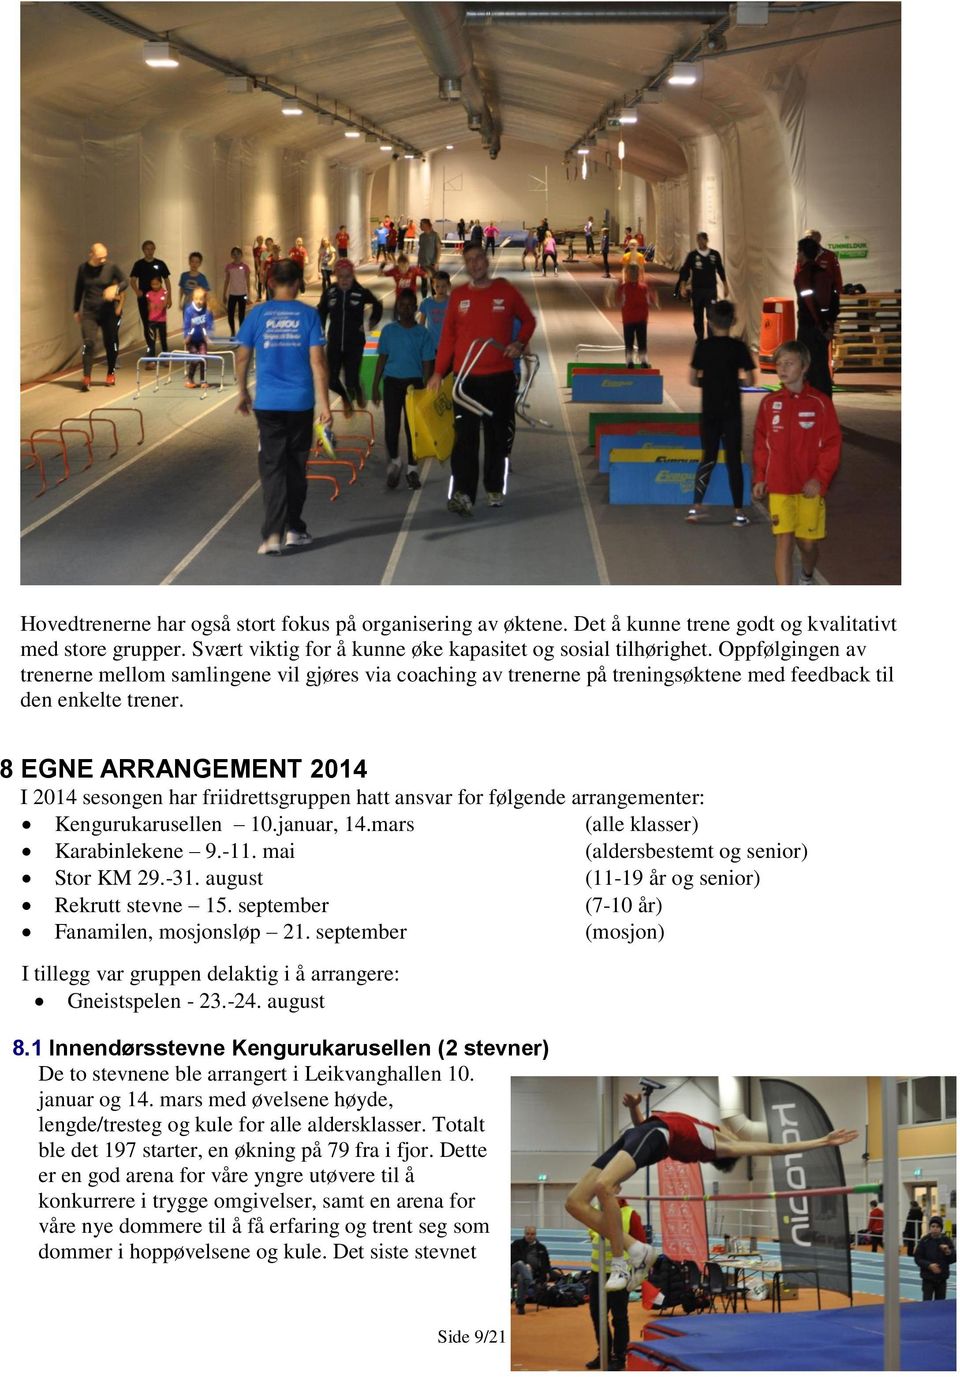 8 EGNE ARRANGEMENT 2014 I 2014 sesongen har friidrettsgruppen hatt ansvar for følgende arrangementer: Kengurukarusellen 10.januar, 14.mars (alle klasser) Karabinlekene 9.-11.